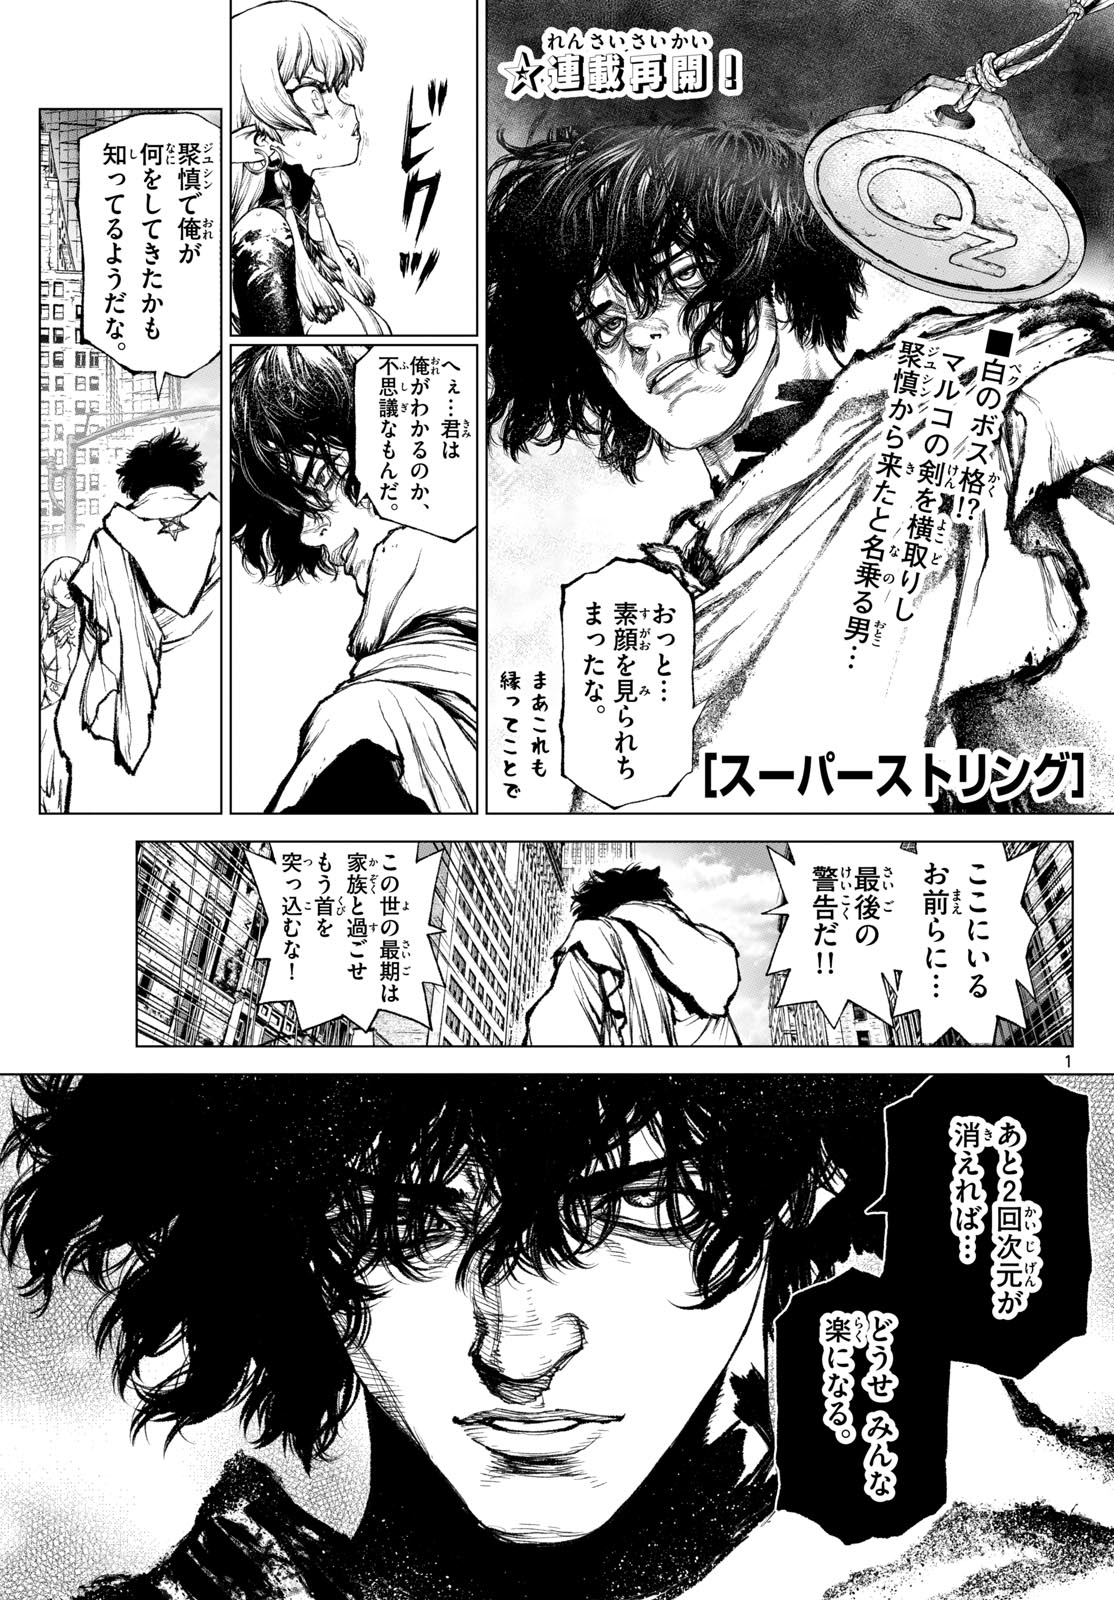 Super String: Isekai Kenbunroku - Chapter 26 - Page 1